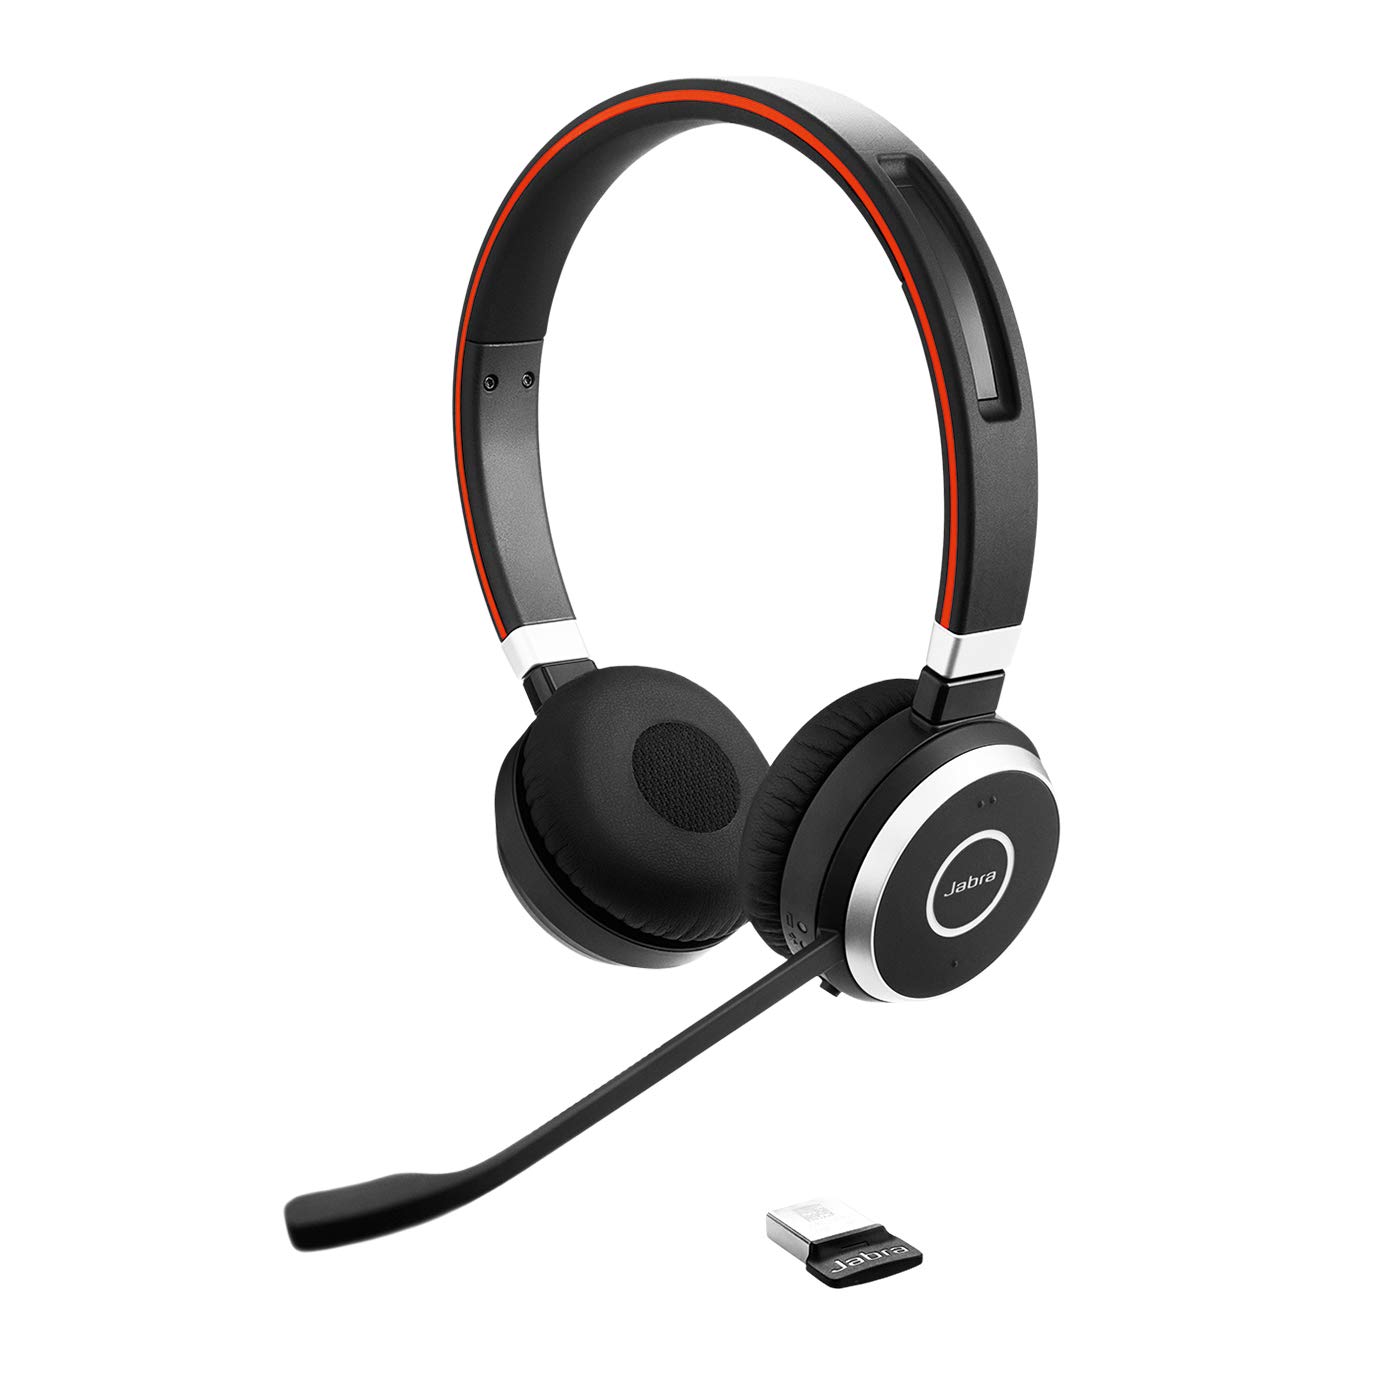 Jabra Evolve 65 MS 无线耳机，立体声 – 包括 Link 370 USB 适配器 – 蓝牙耳机，具有行业领先的无线性能、高级降噪麦克风、全天电池